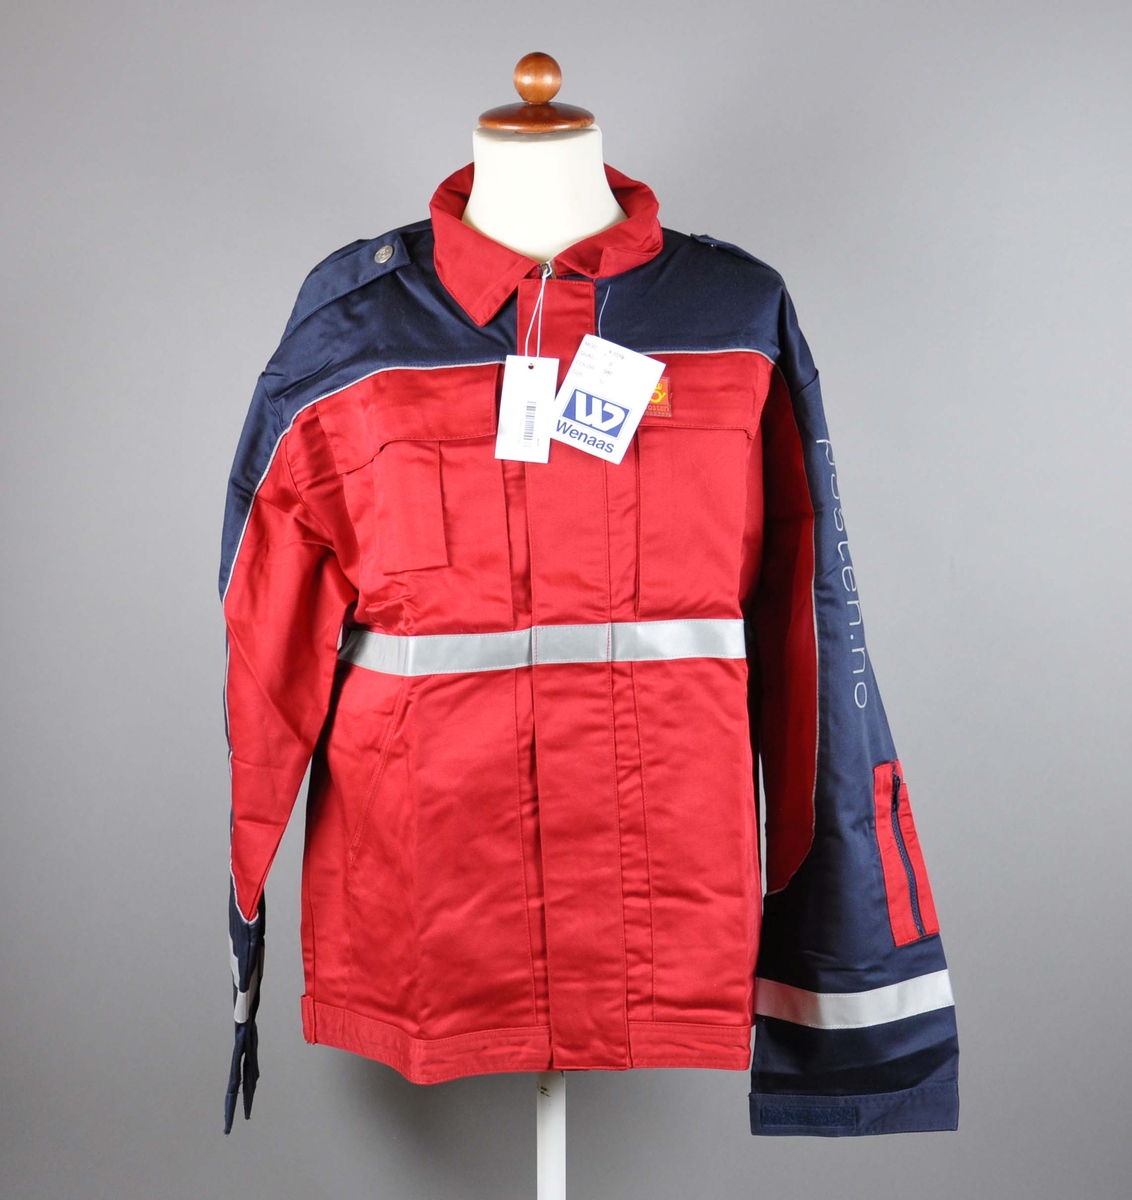 Rød uniformsjakke med postlogo. 4 lommer + lomme for mobil og for penner. Refleksbånd på ermer og liv. Skulderklaffer med kanpper med posthorn.